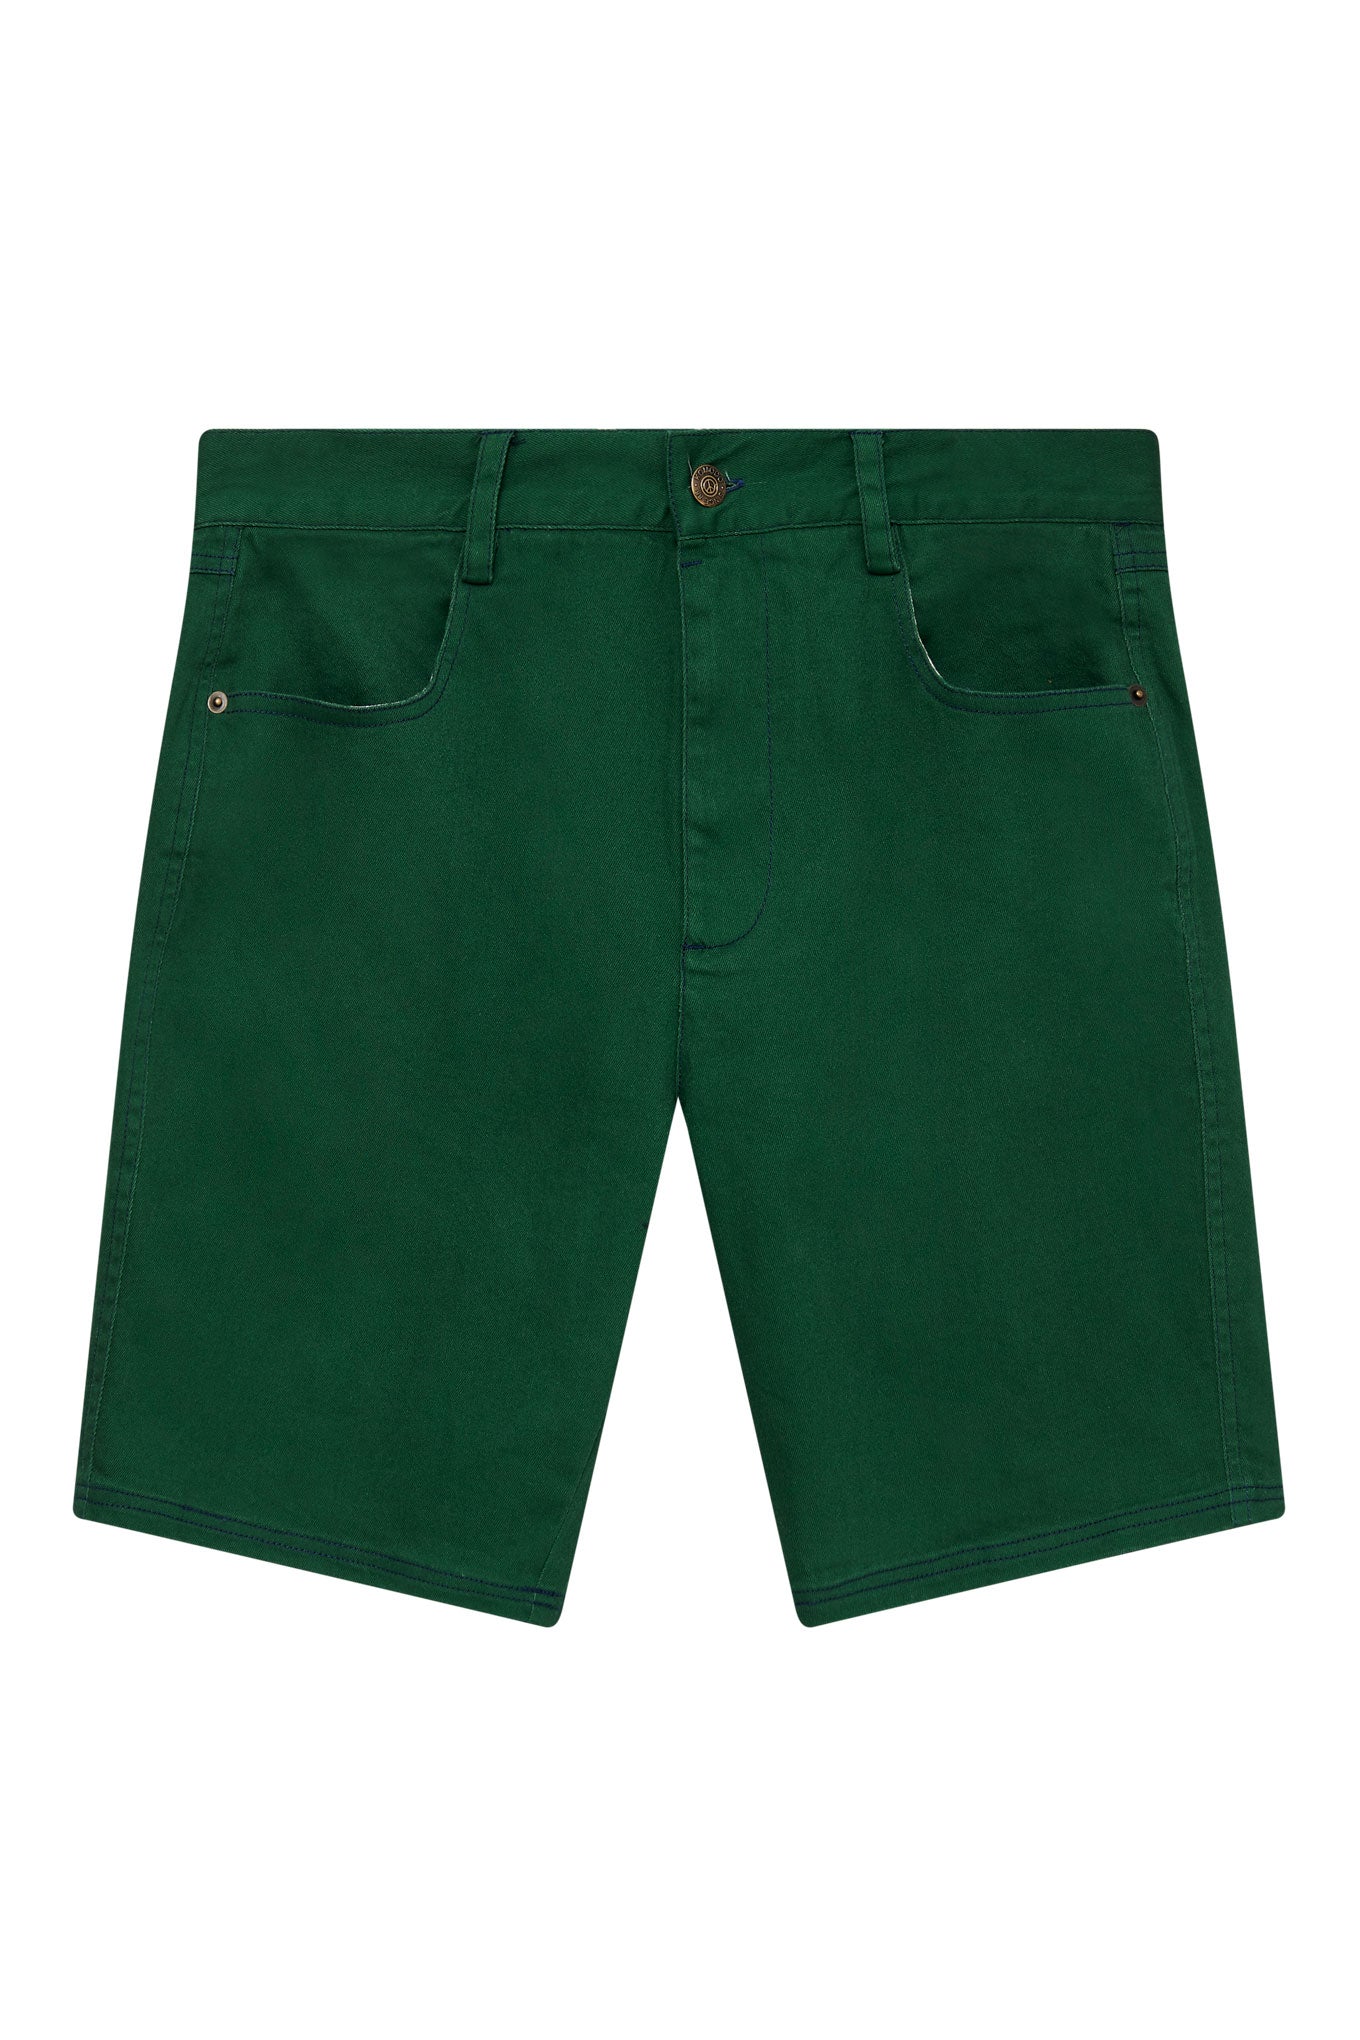 Grüne kurze Hosen Lyric aus Bio-Baumwolle von Komodo